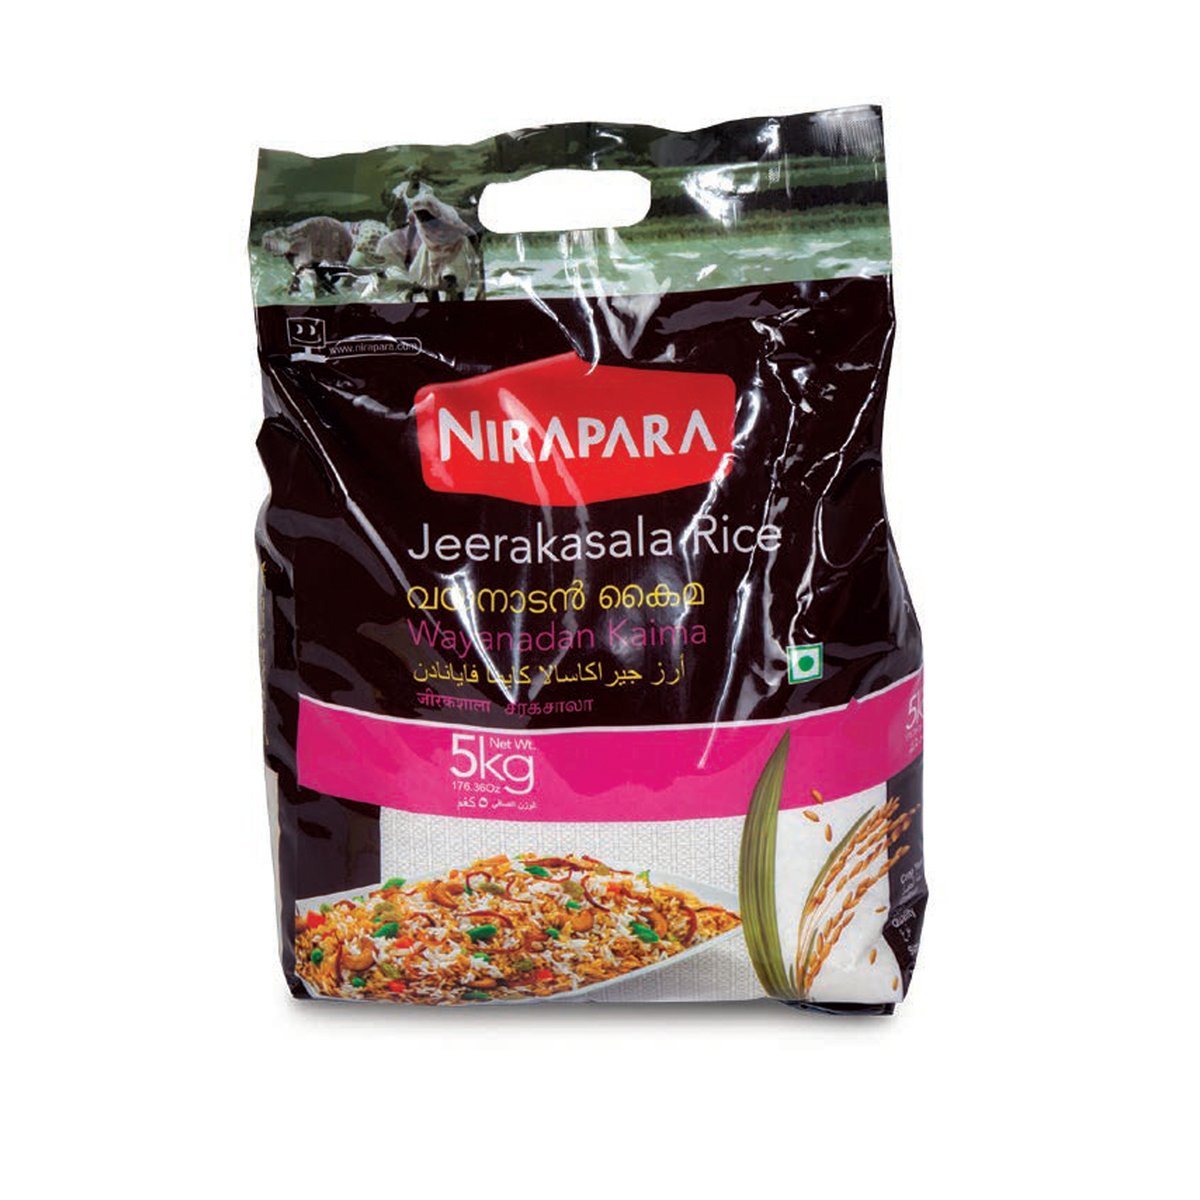 نيرابارا أرز جيراكاشالا 5 كجم